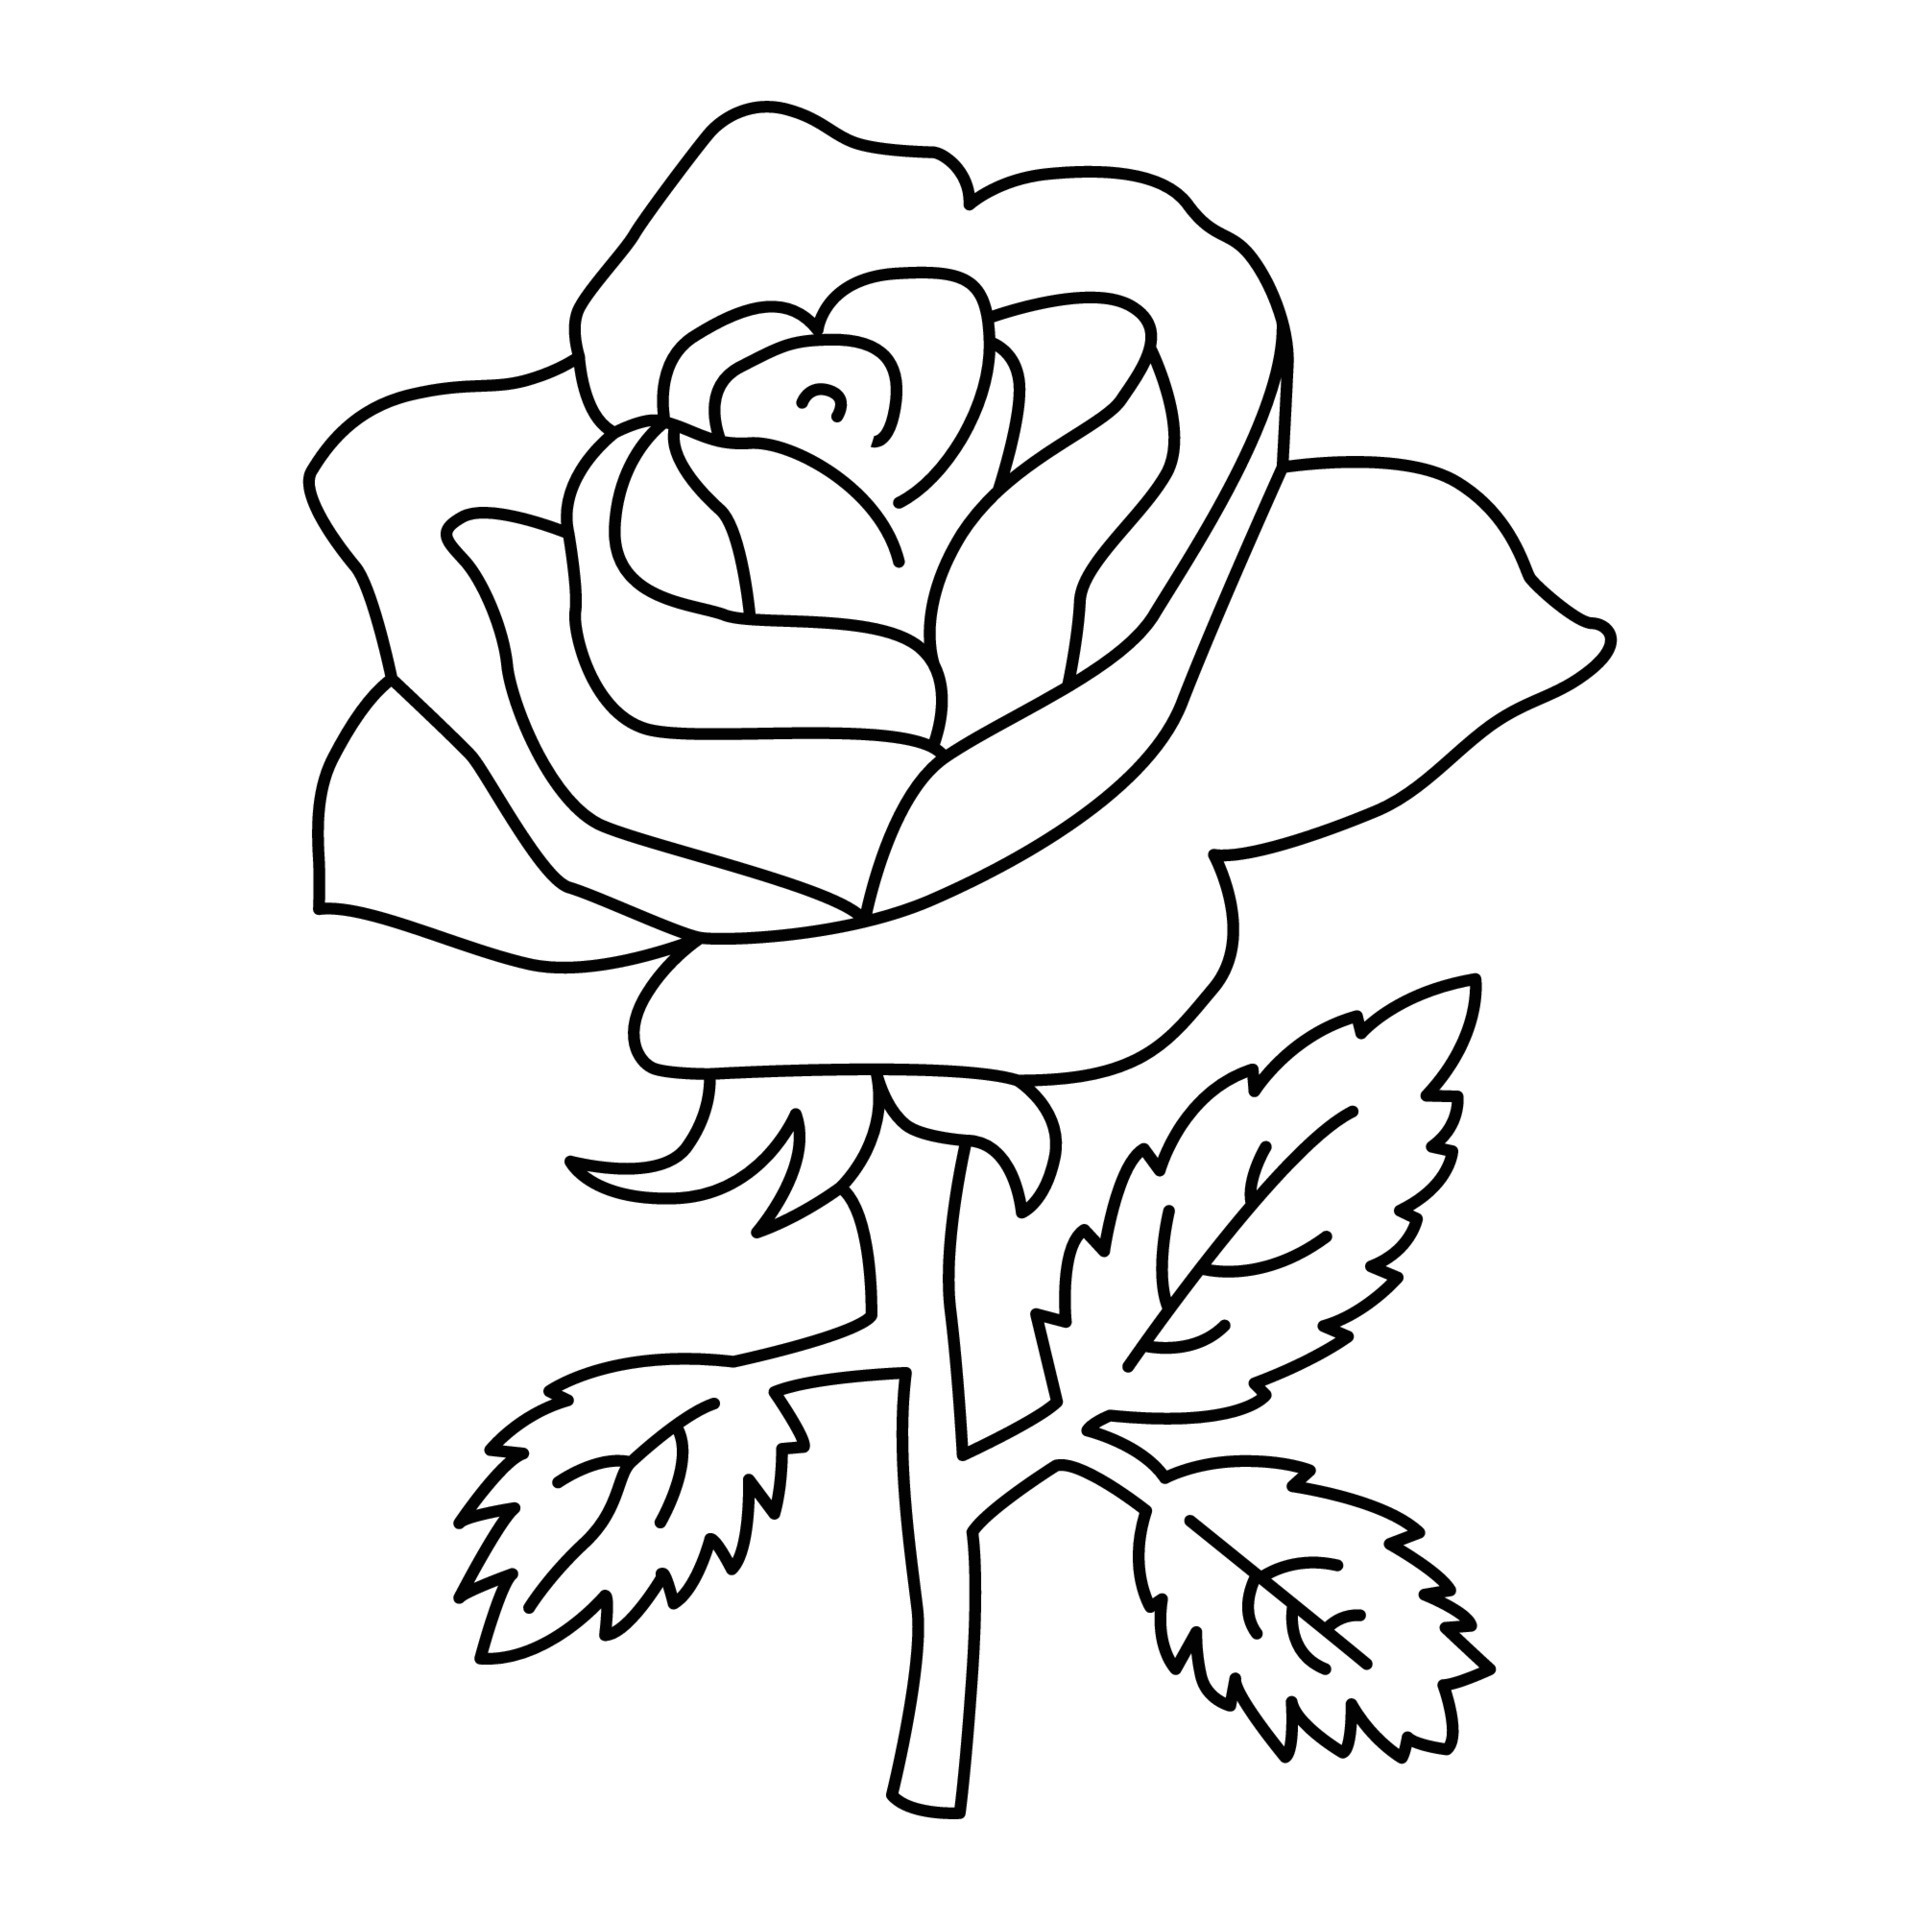 Rose Flower cartoon vector illustration 21865678 Vector Art at Vecteezy